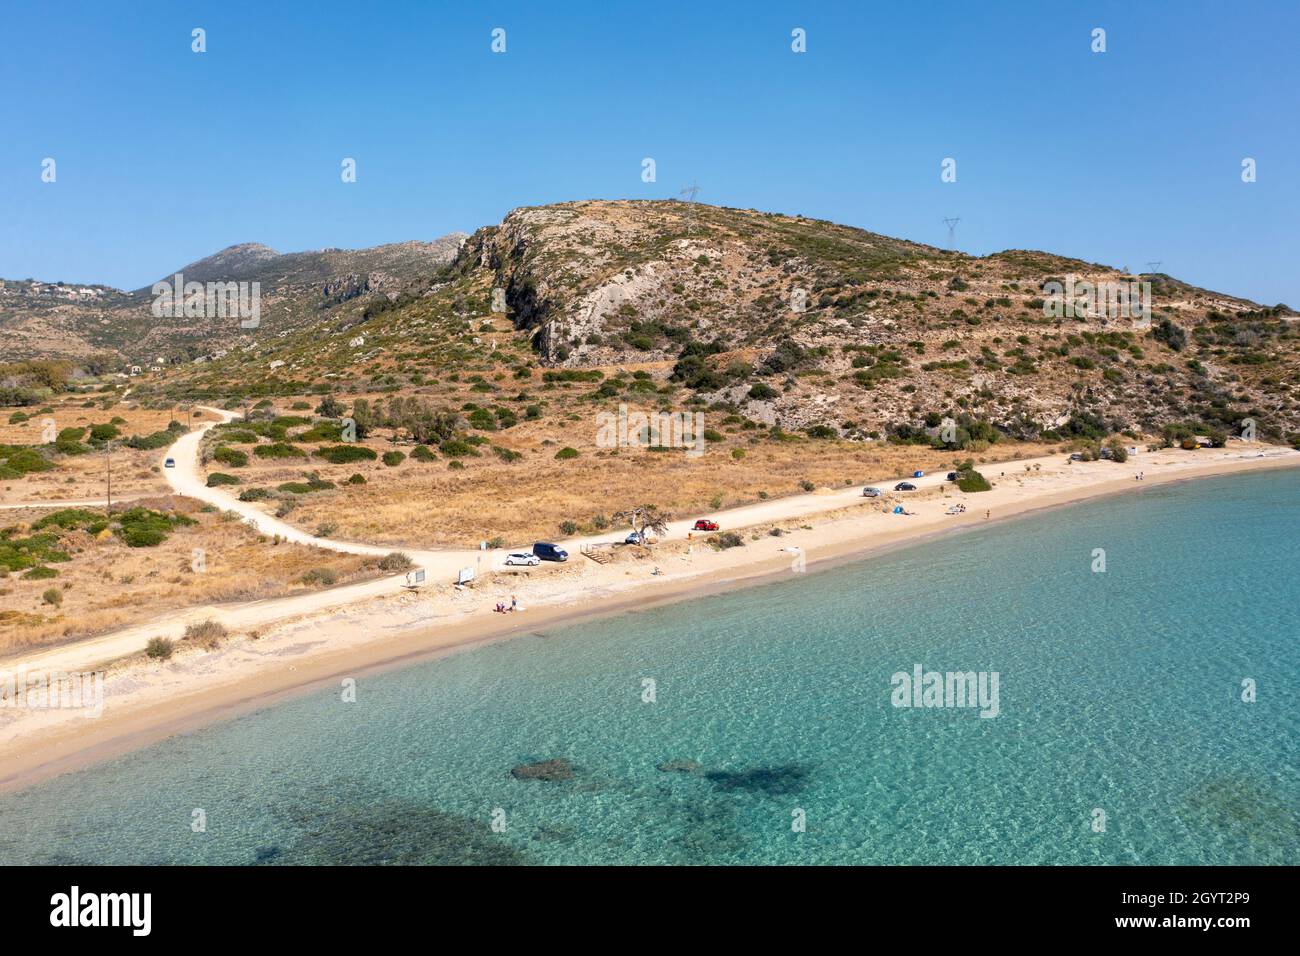 Vista aérea del paisaje de una playa (Paralia Katelios) en la costa sur de Kefalonia, Islas Jónicas, Grecia Foto de stock